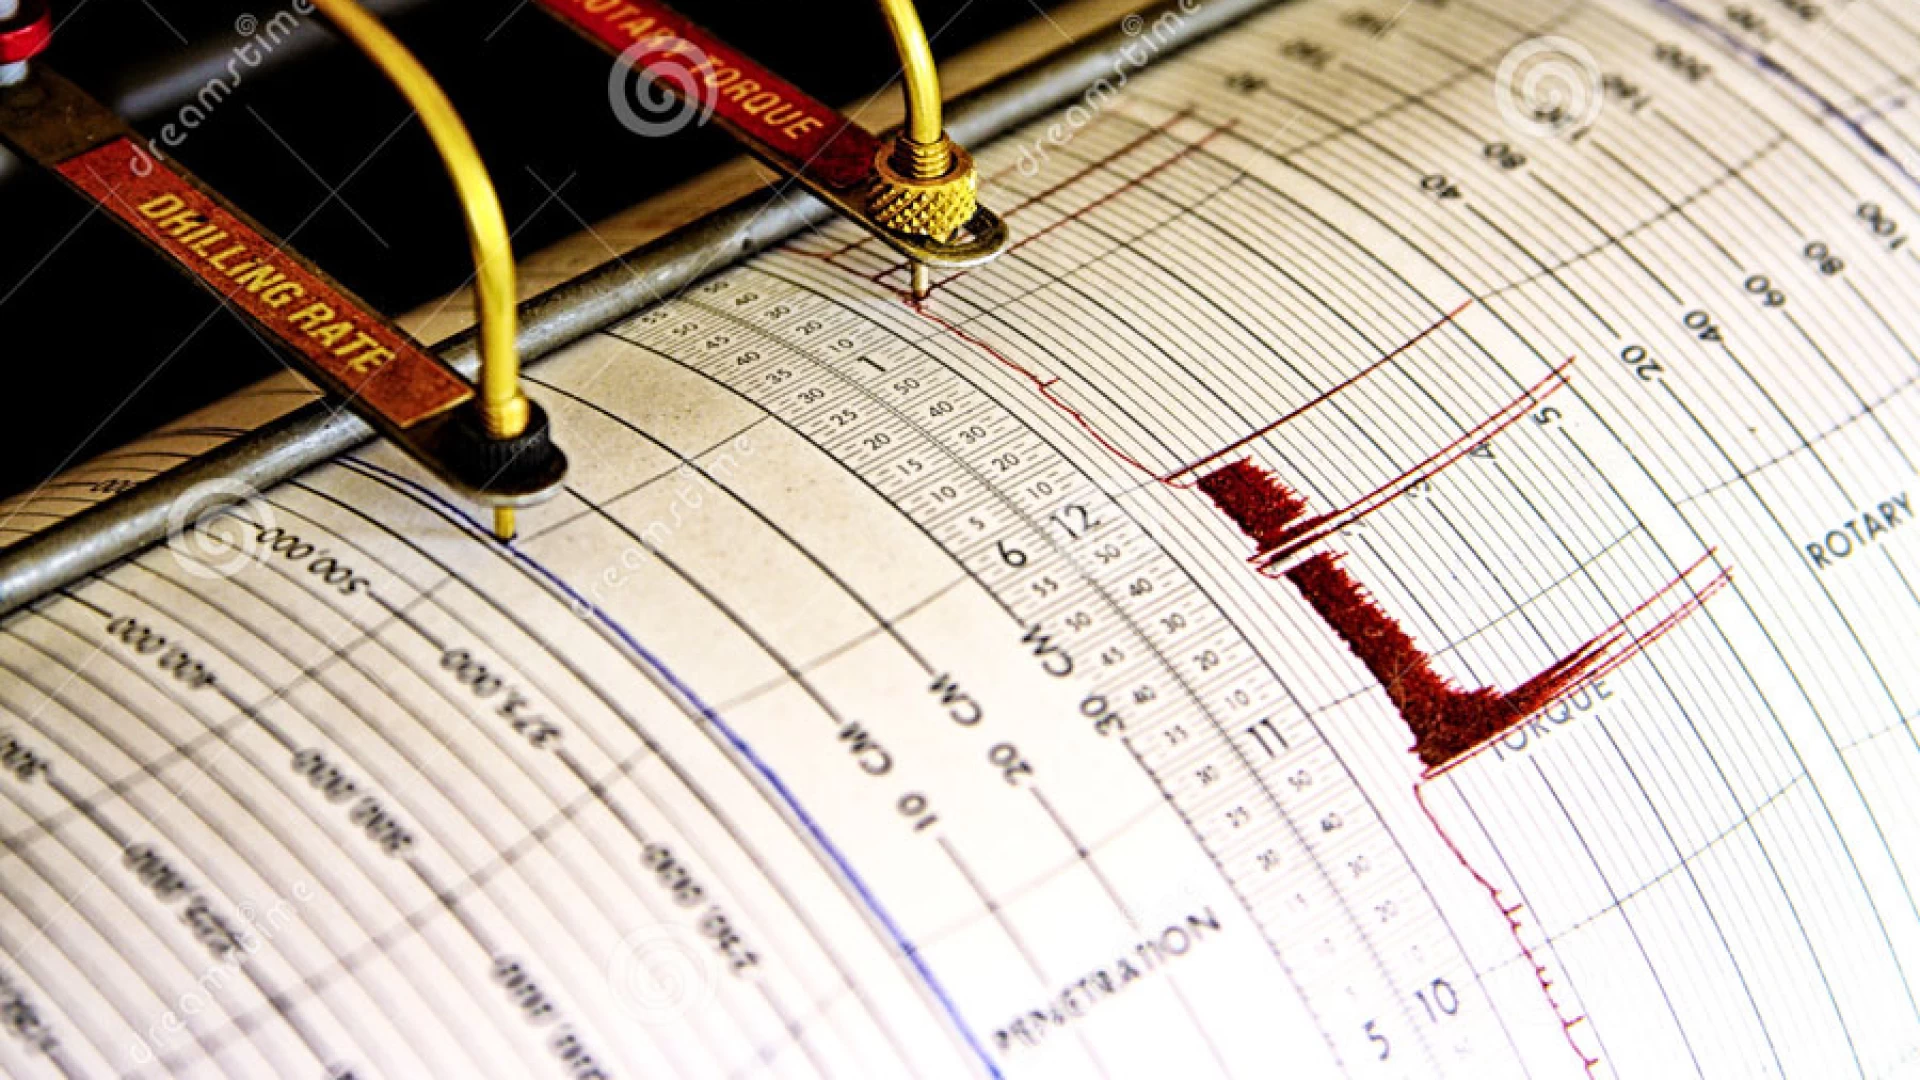 Terremoto Molise, i geologi: nessuna correlazione con eventi sismici Italia centrale